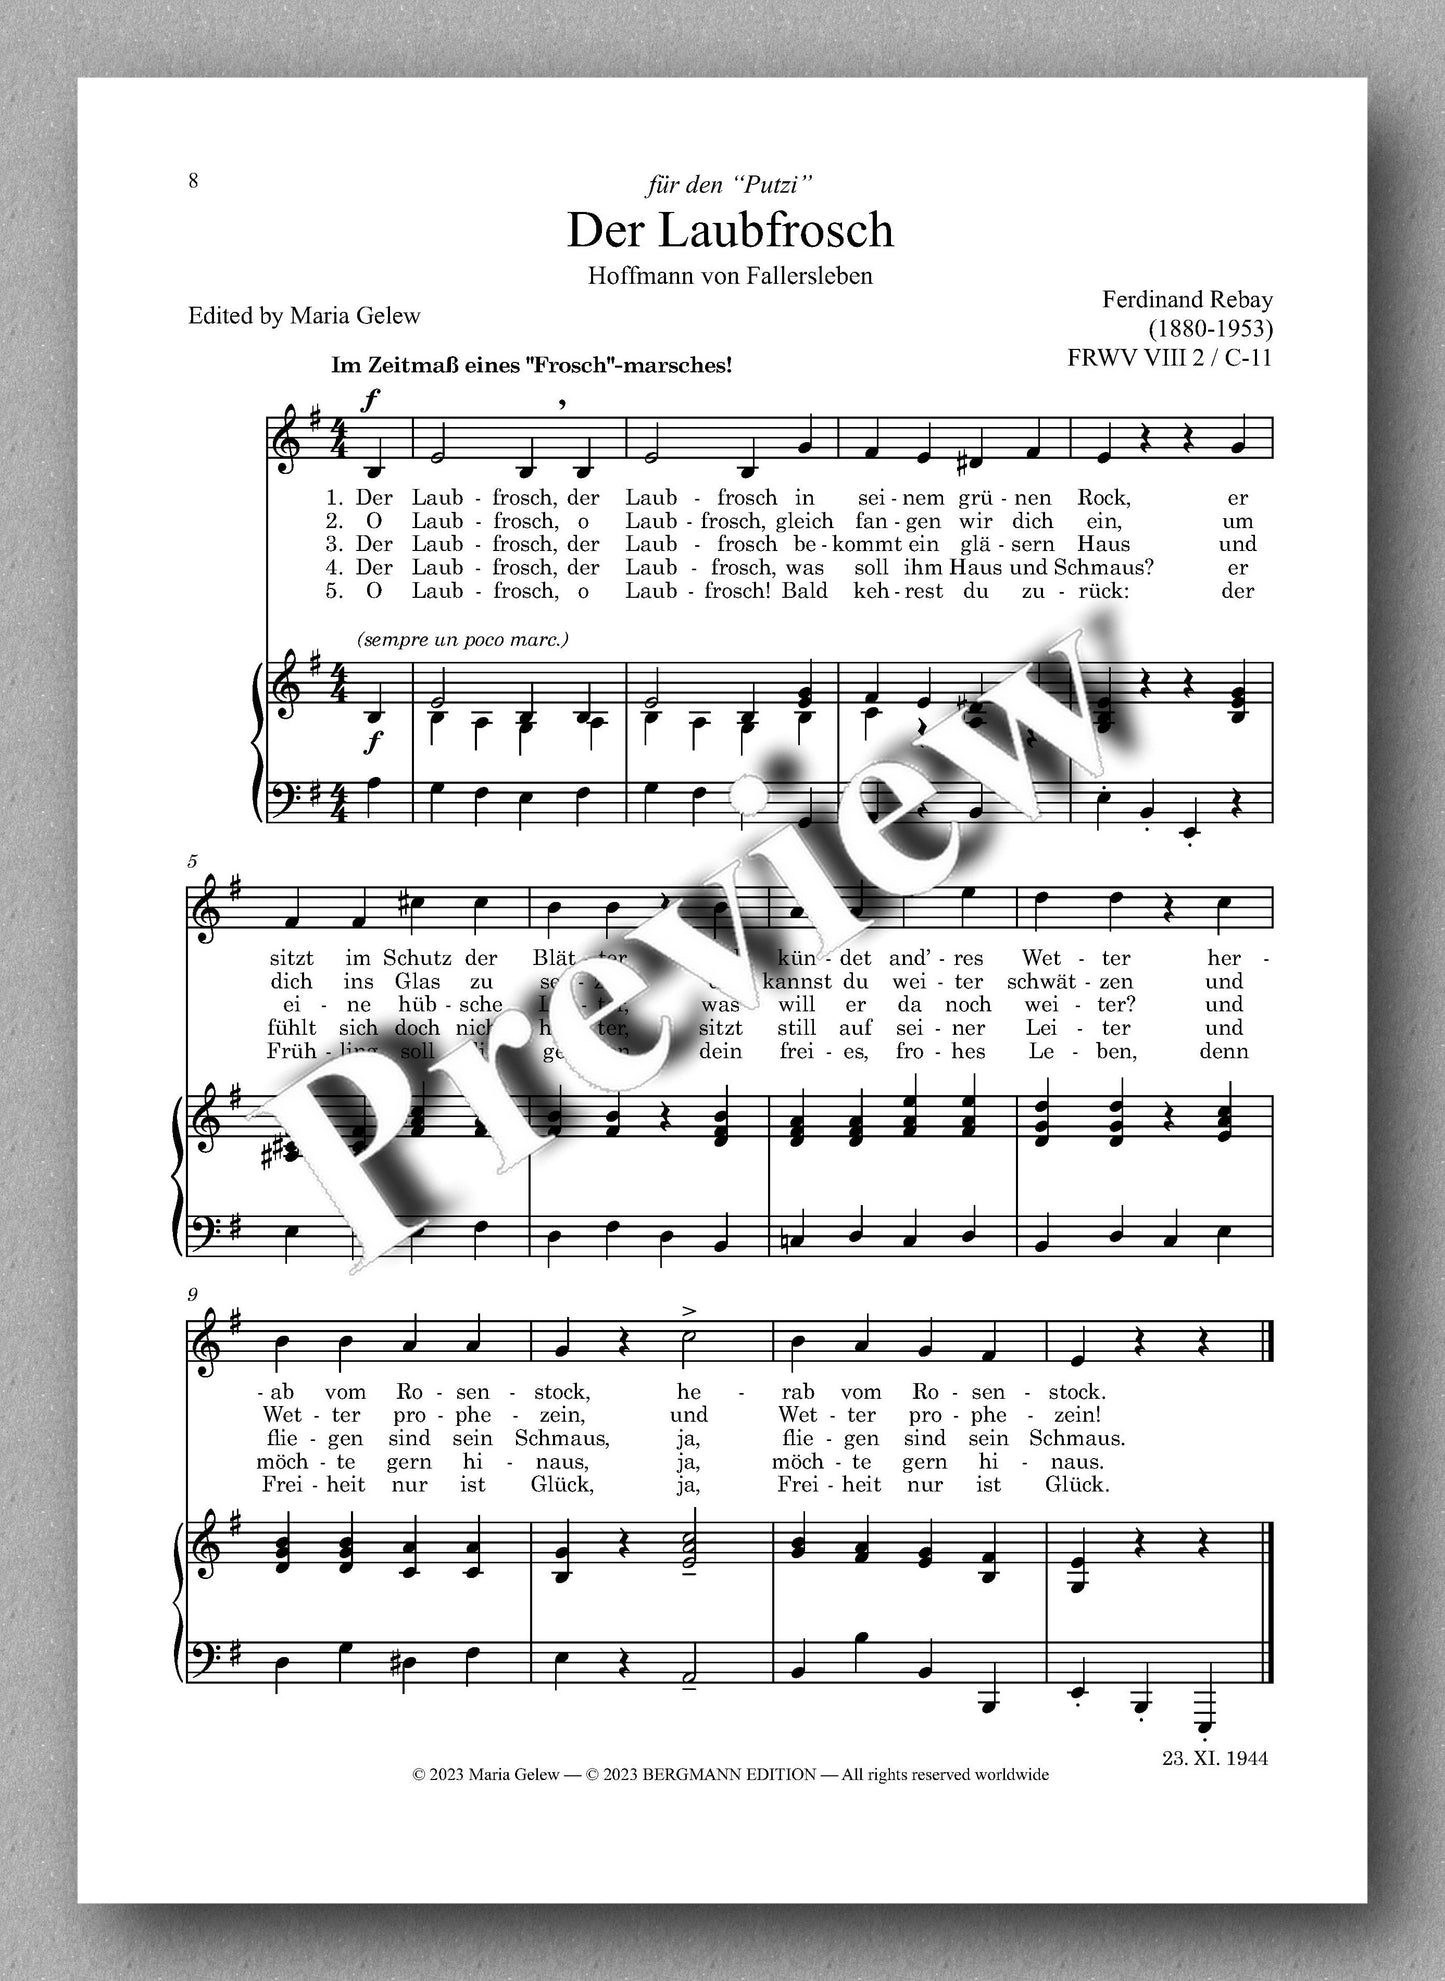 Ferdinand Rebay, Kinderlieder mit Klavierbegleitung - preview of the music score 2